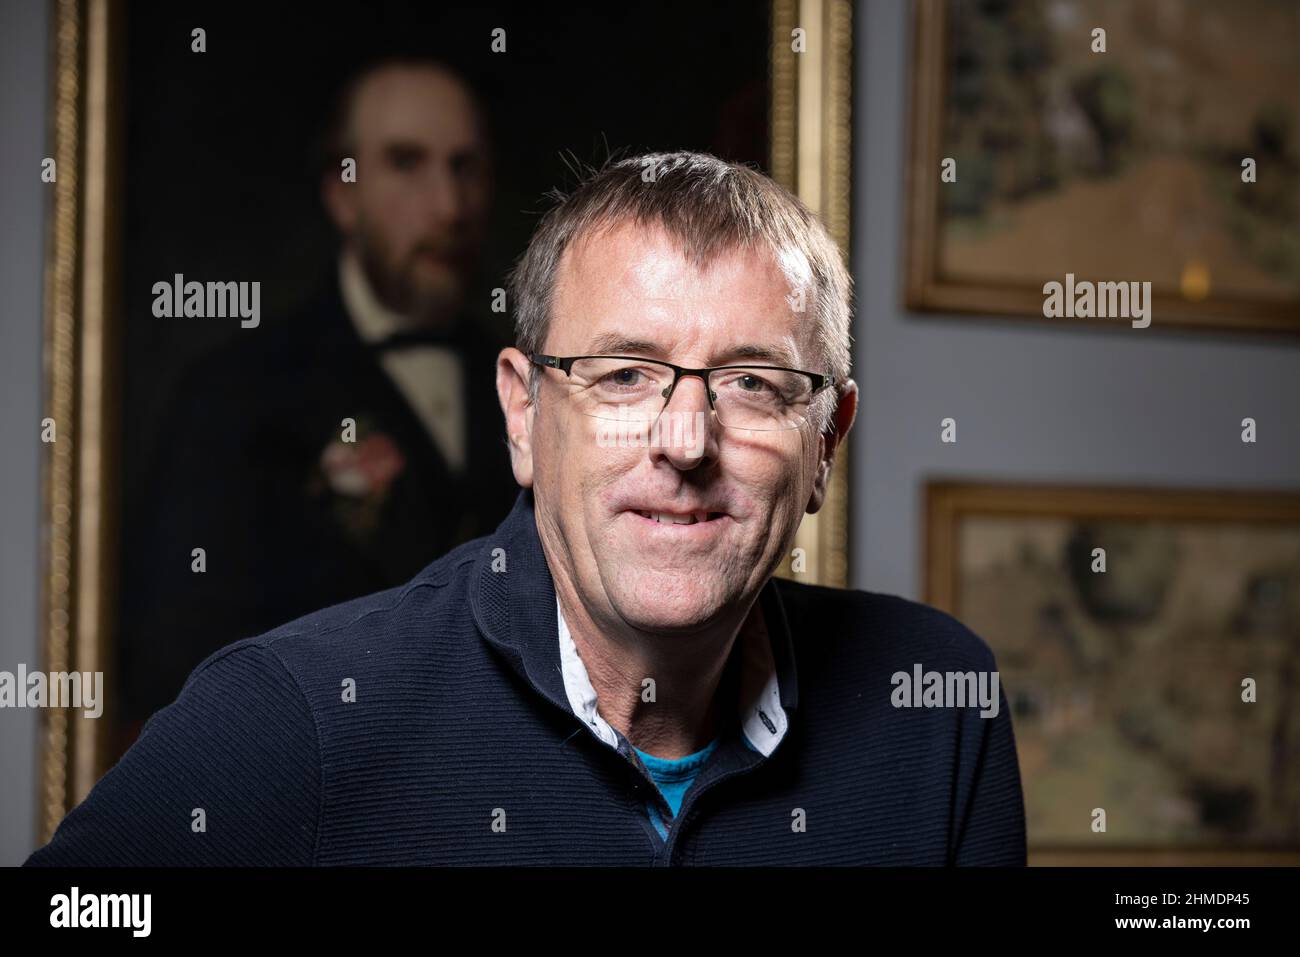 Matthew le Tissier, ancien joueur de football du Southampton FC photographié à Londres, en Angleterre, au Royaume-Uni Banque D'Images